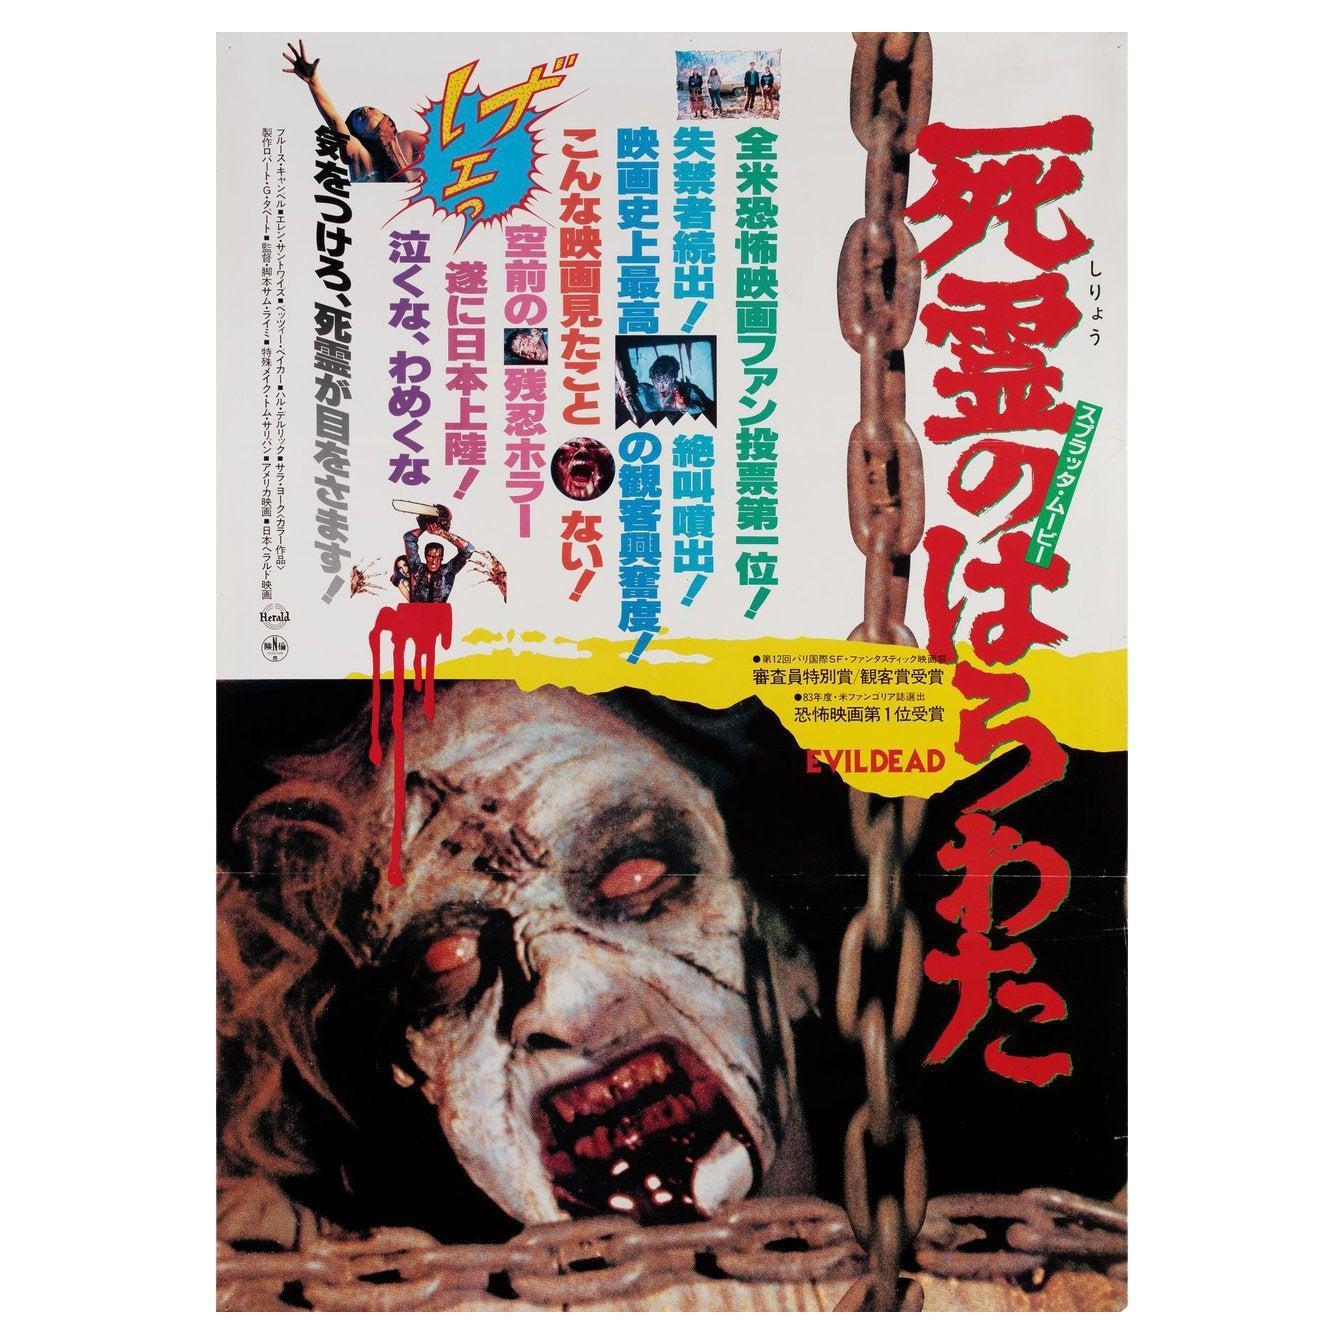 Affiche japonaise du film The Evil Dead, 1984, format B2